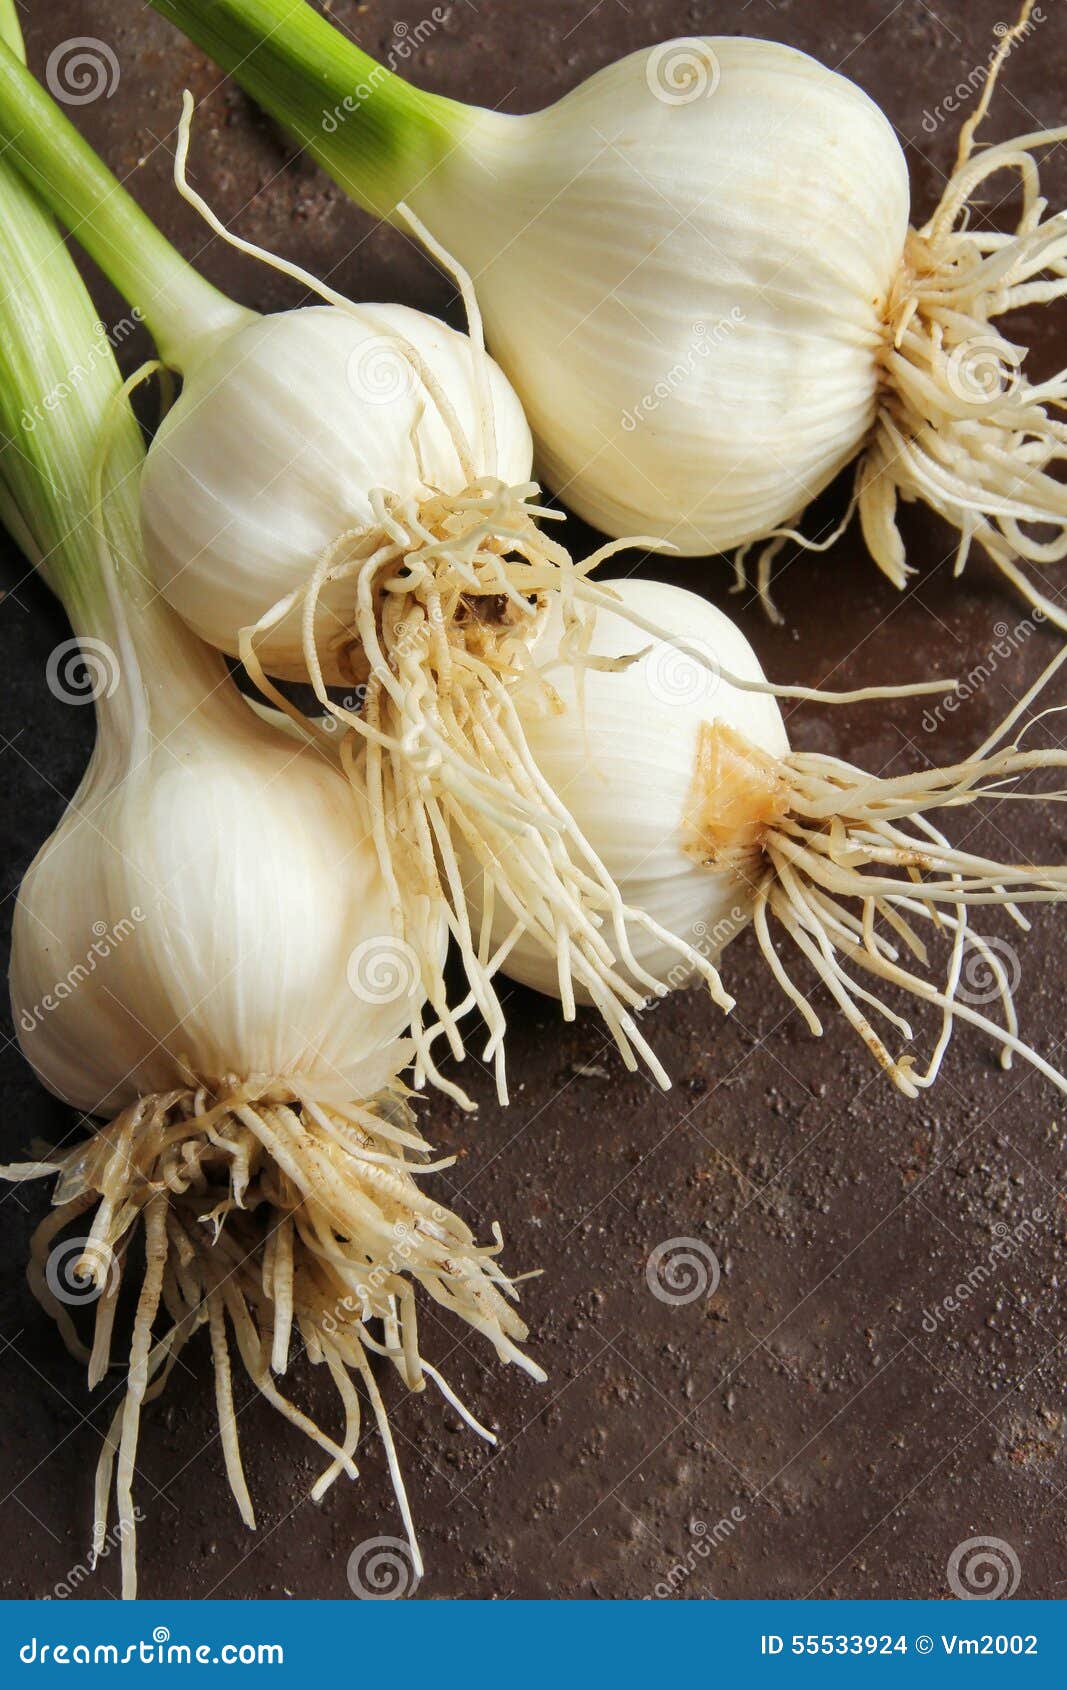 Fresh Garlic With Stem From Kitchen Garden Stock Photo Image Of Garden Overhead 55533924